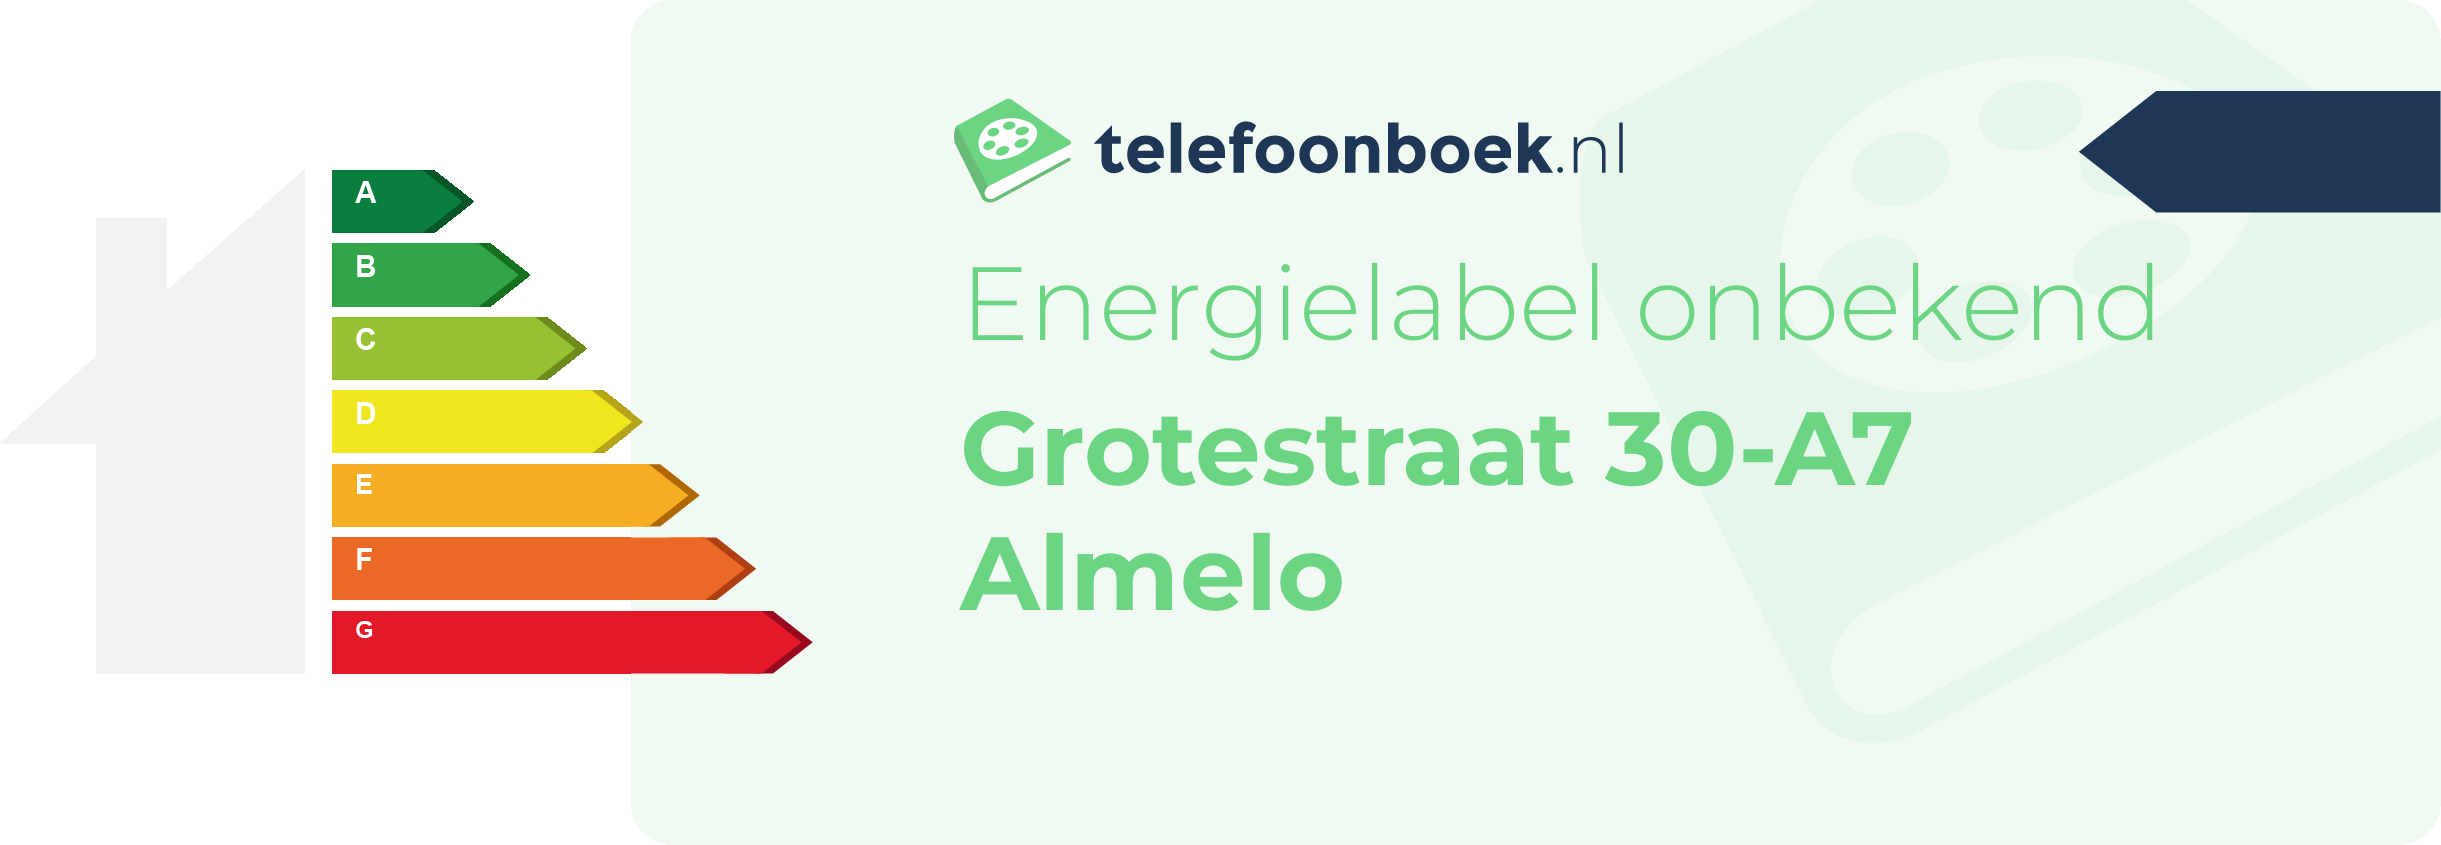 Energielabel Grotestraat 30-A7 Almelo